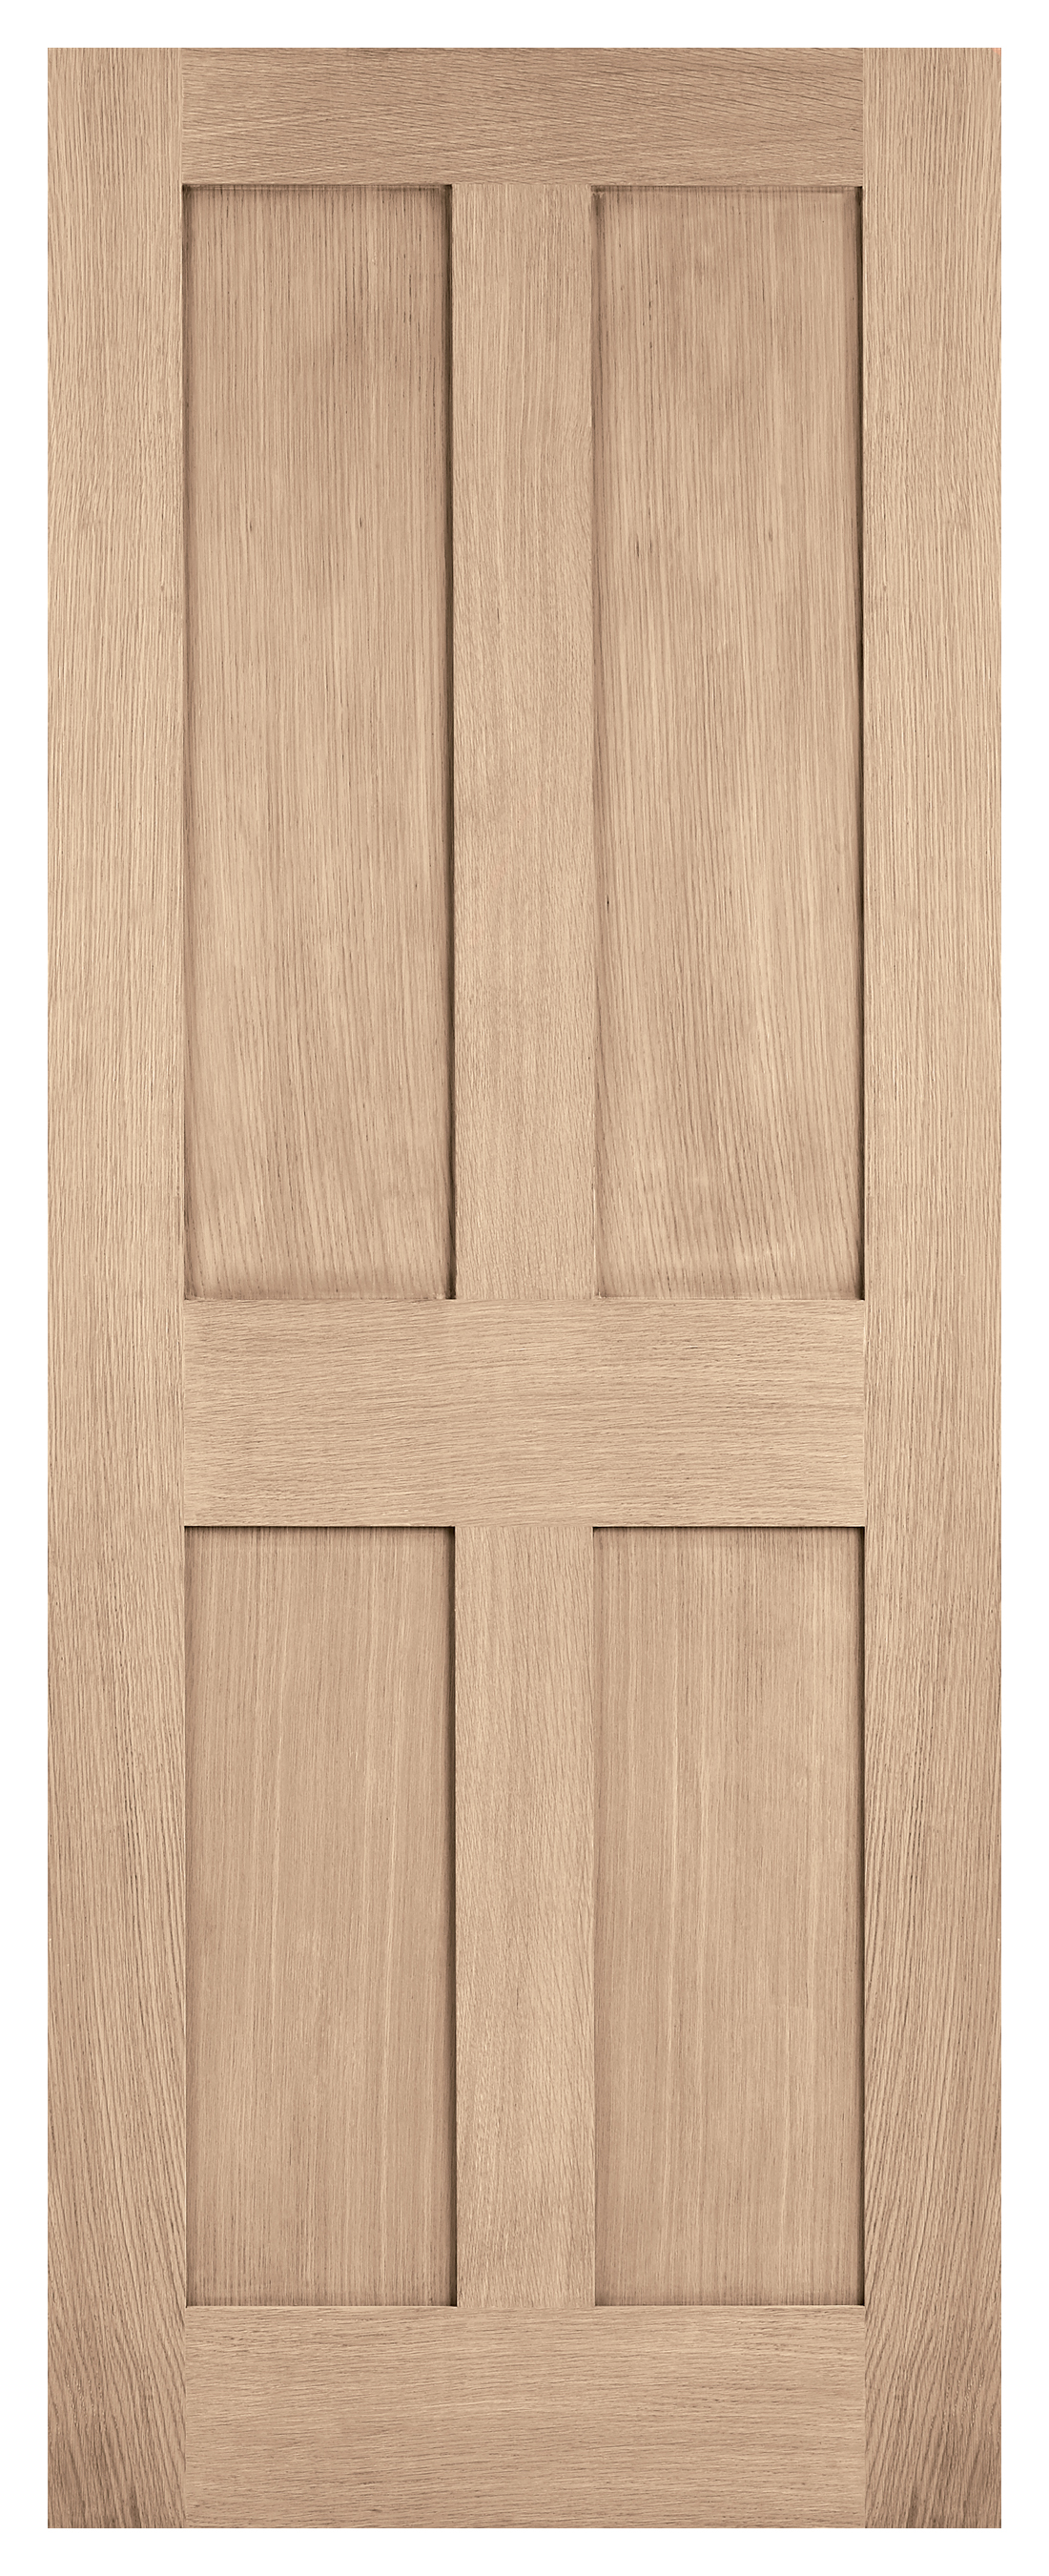 Image of LPD Internal London 4 Panel Unfinished Oak FD30 Fire Door - 762 x 1981mm